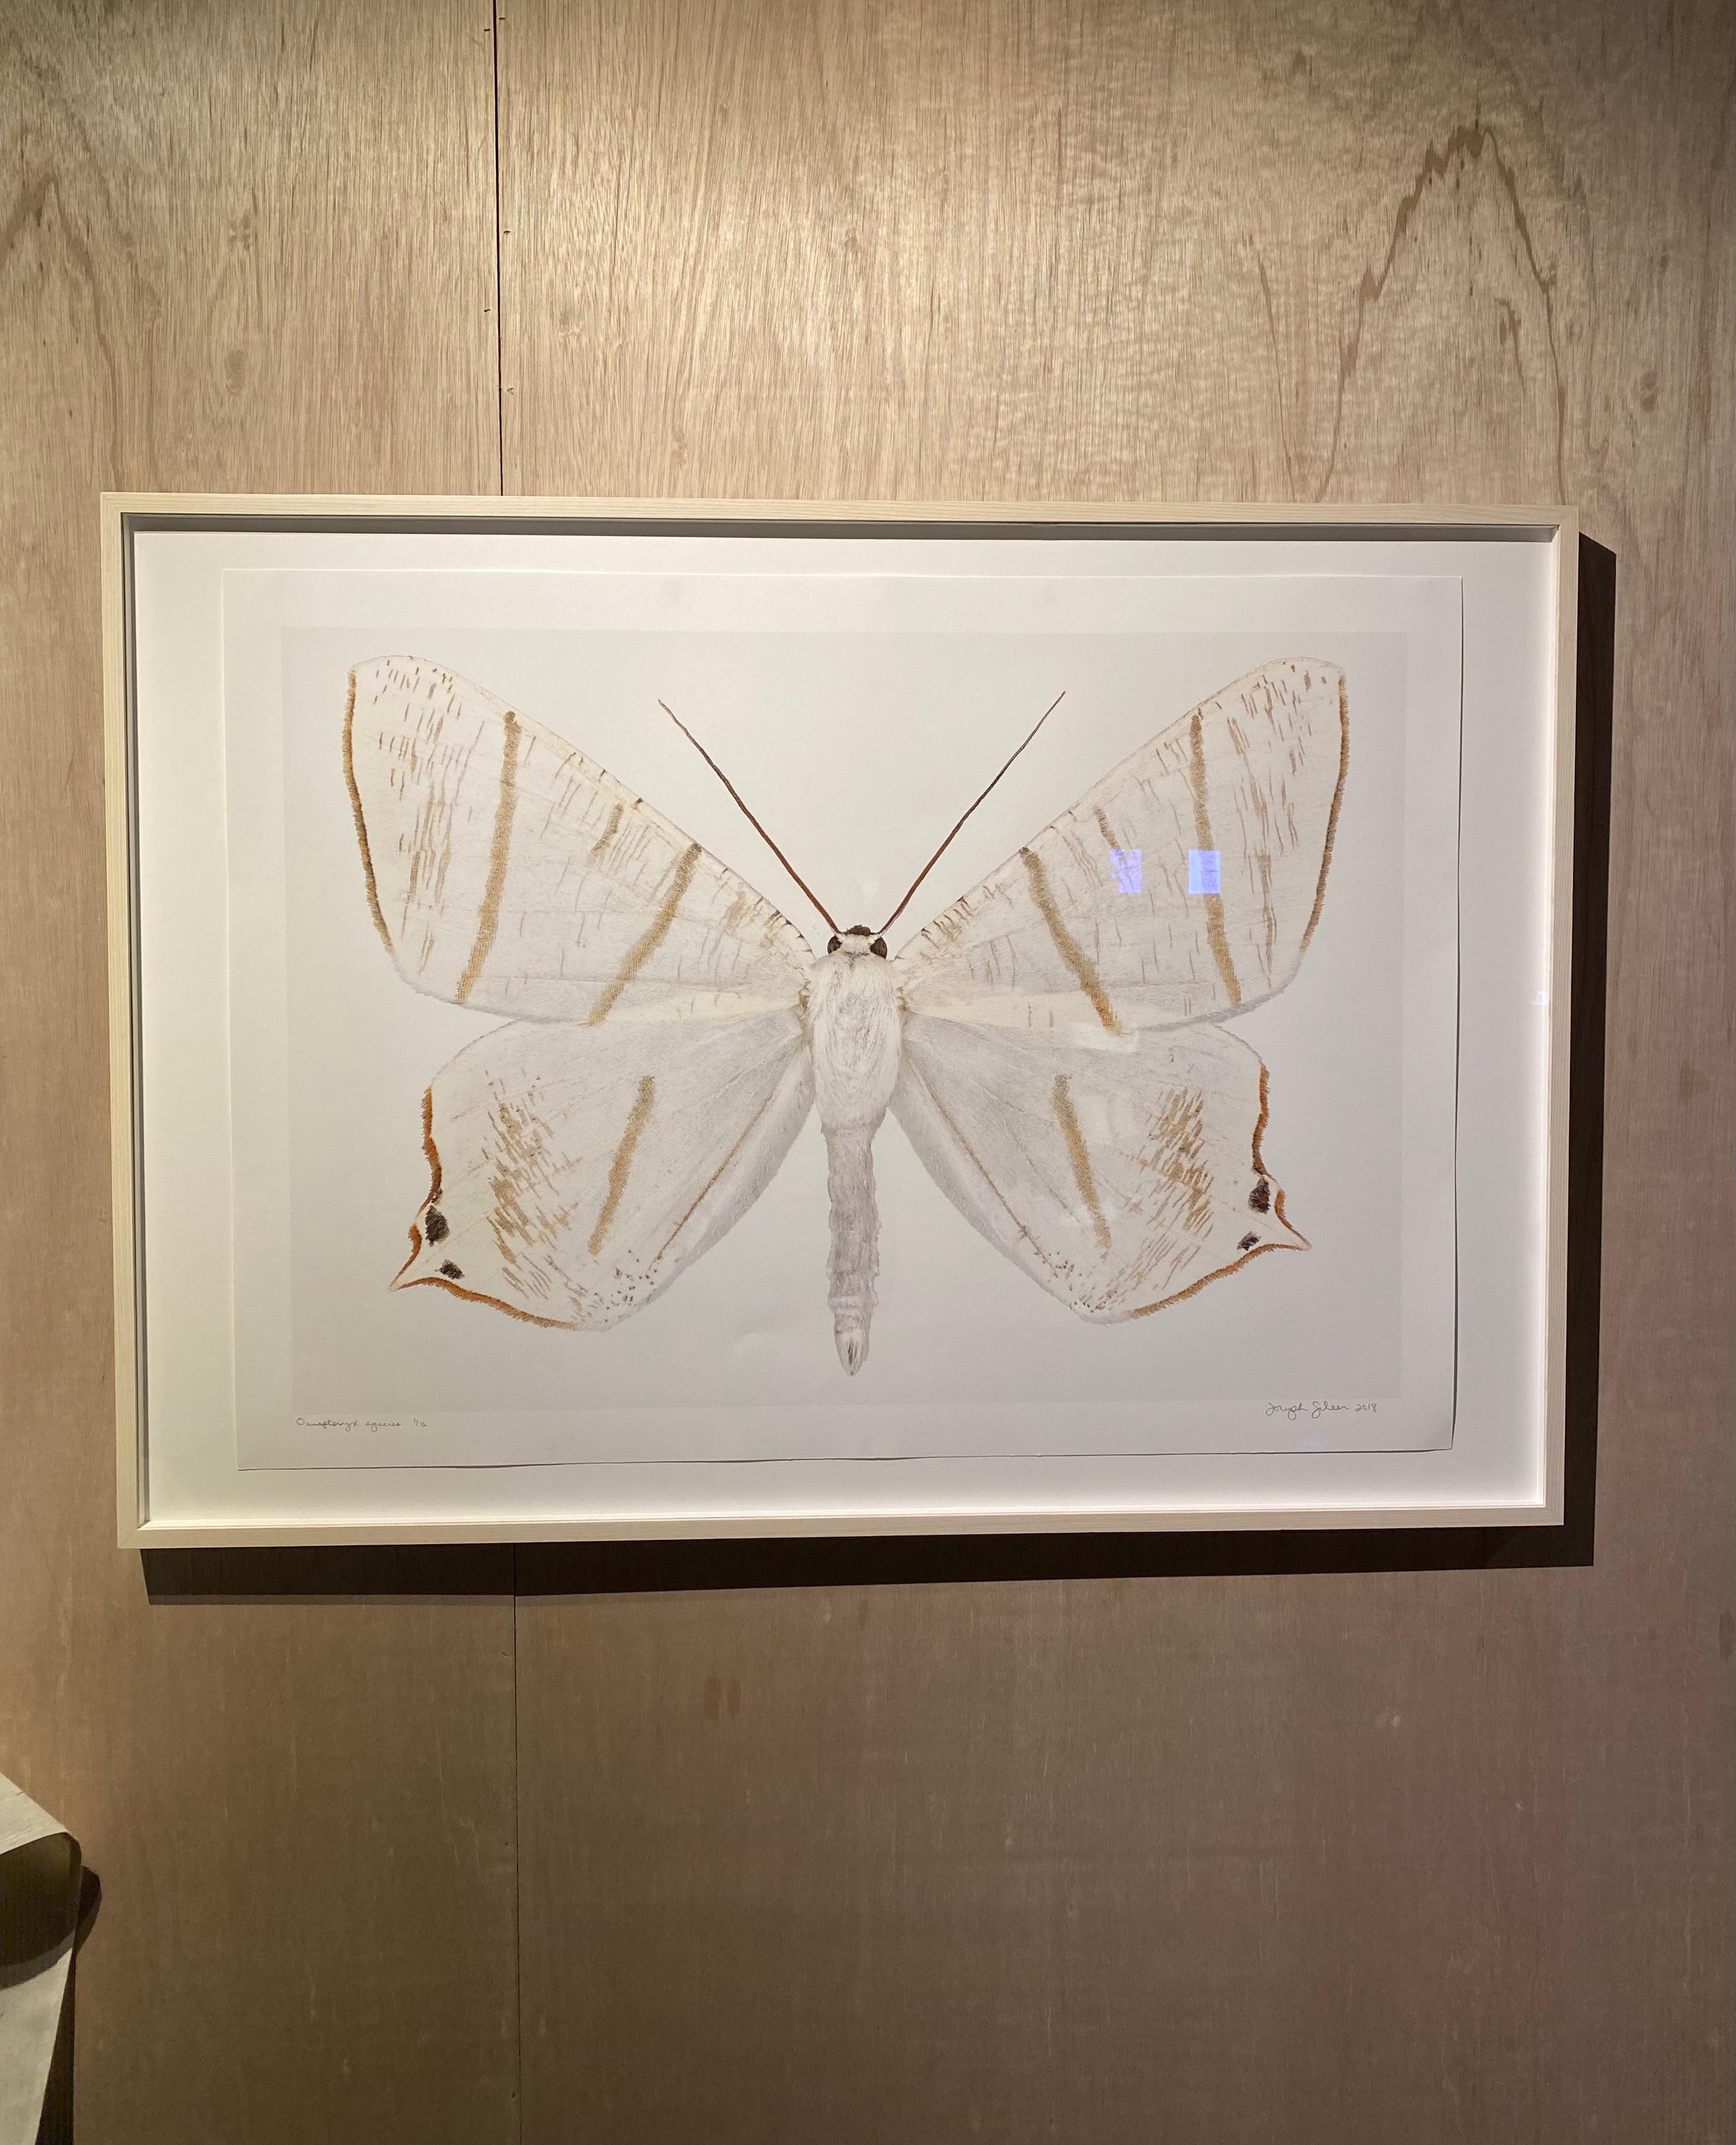 Dans cette impression hyper-détaillée sur papier aquarelle, un papillon de nuit blanc avec des marques circulaires brunes à l'extrémité de ses ailes inférieures et des rayures marron clair et doré se détache de façon spectaculaire sur un fond blanc